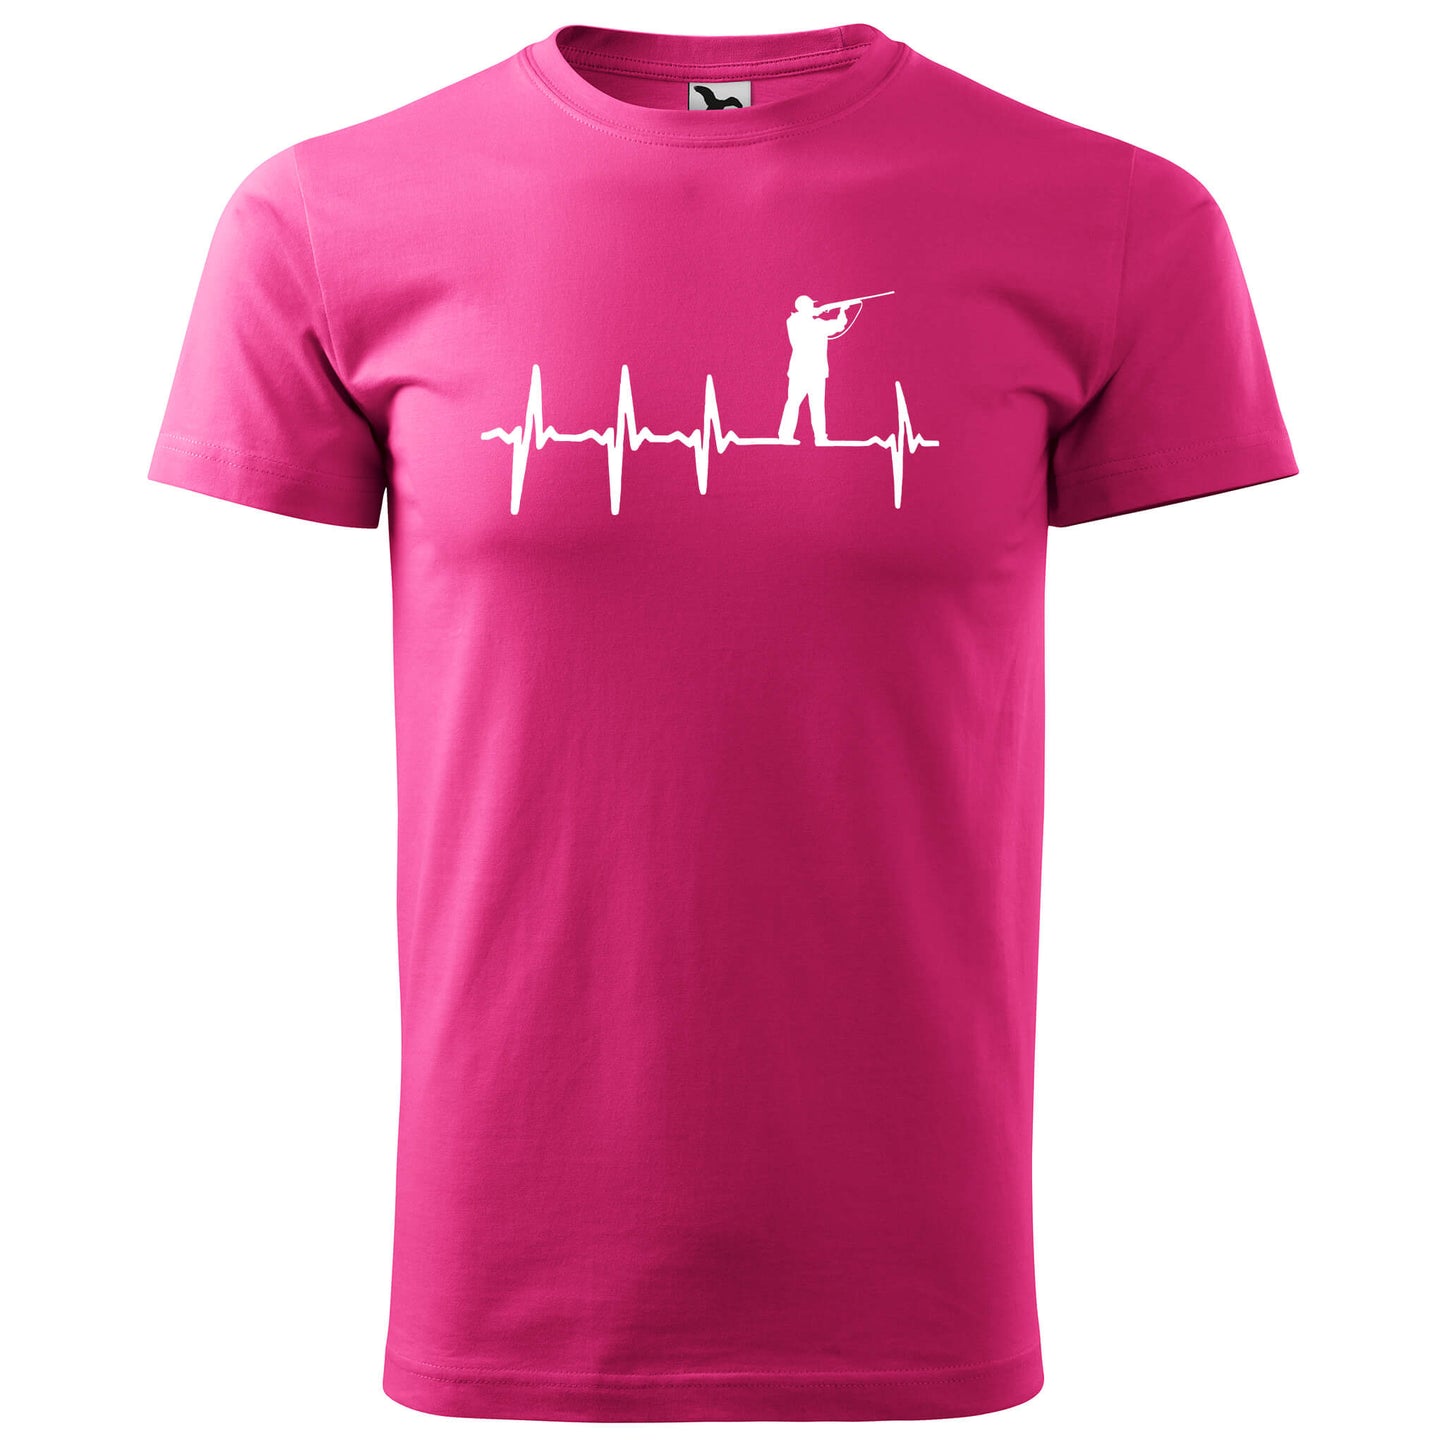 T-shirt - EKG - Hunter - rvdesignprint